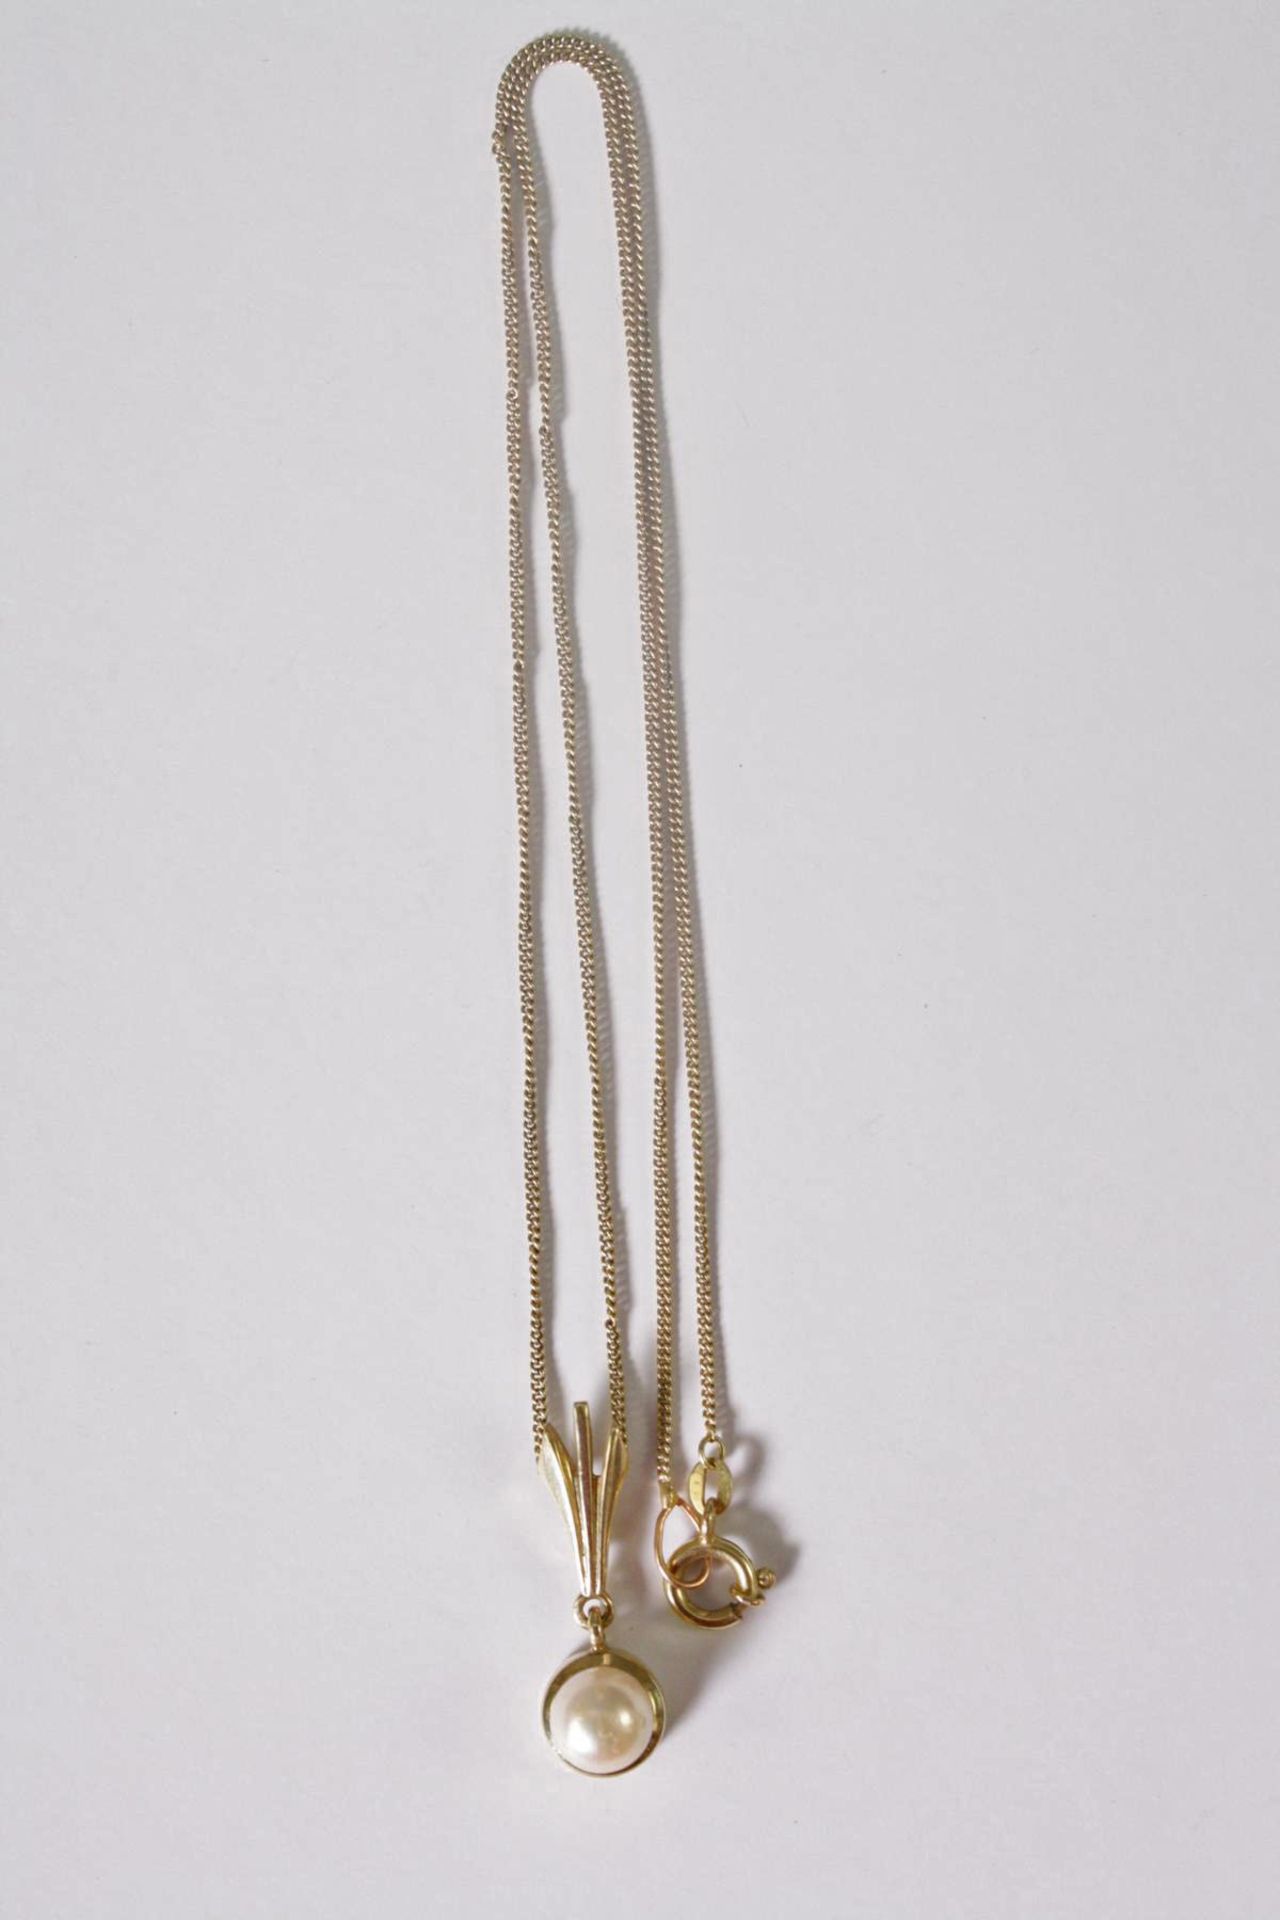 Halskette mit Perlanhänger, 14 Karat Gelbgold - Image 2 of 2